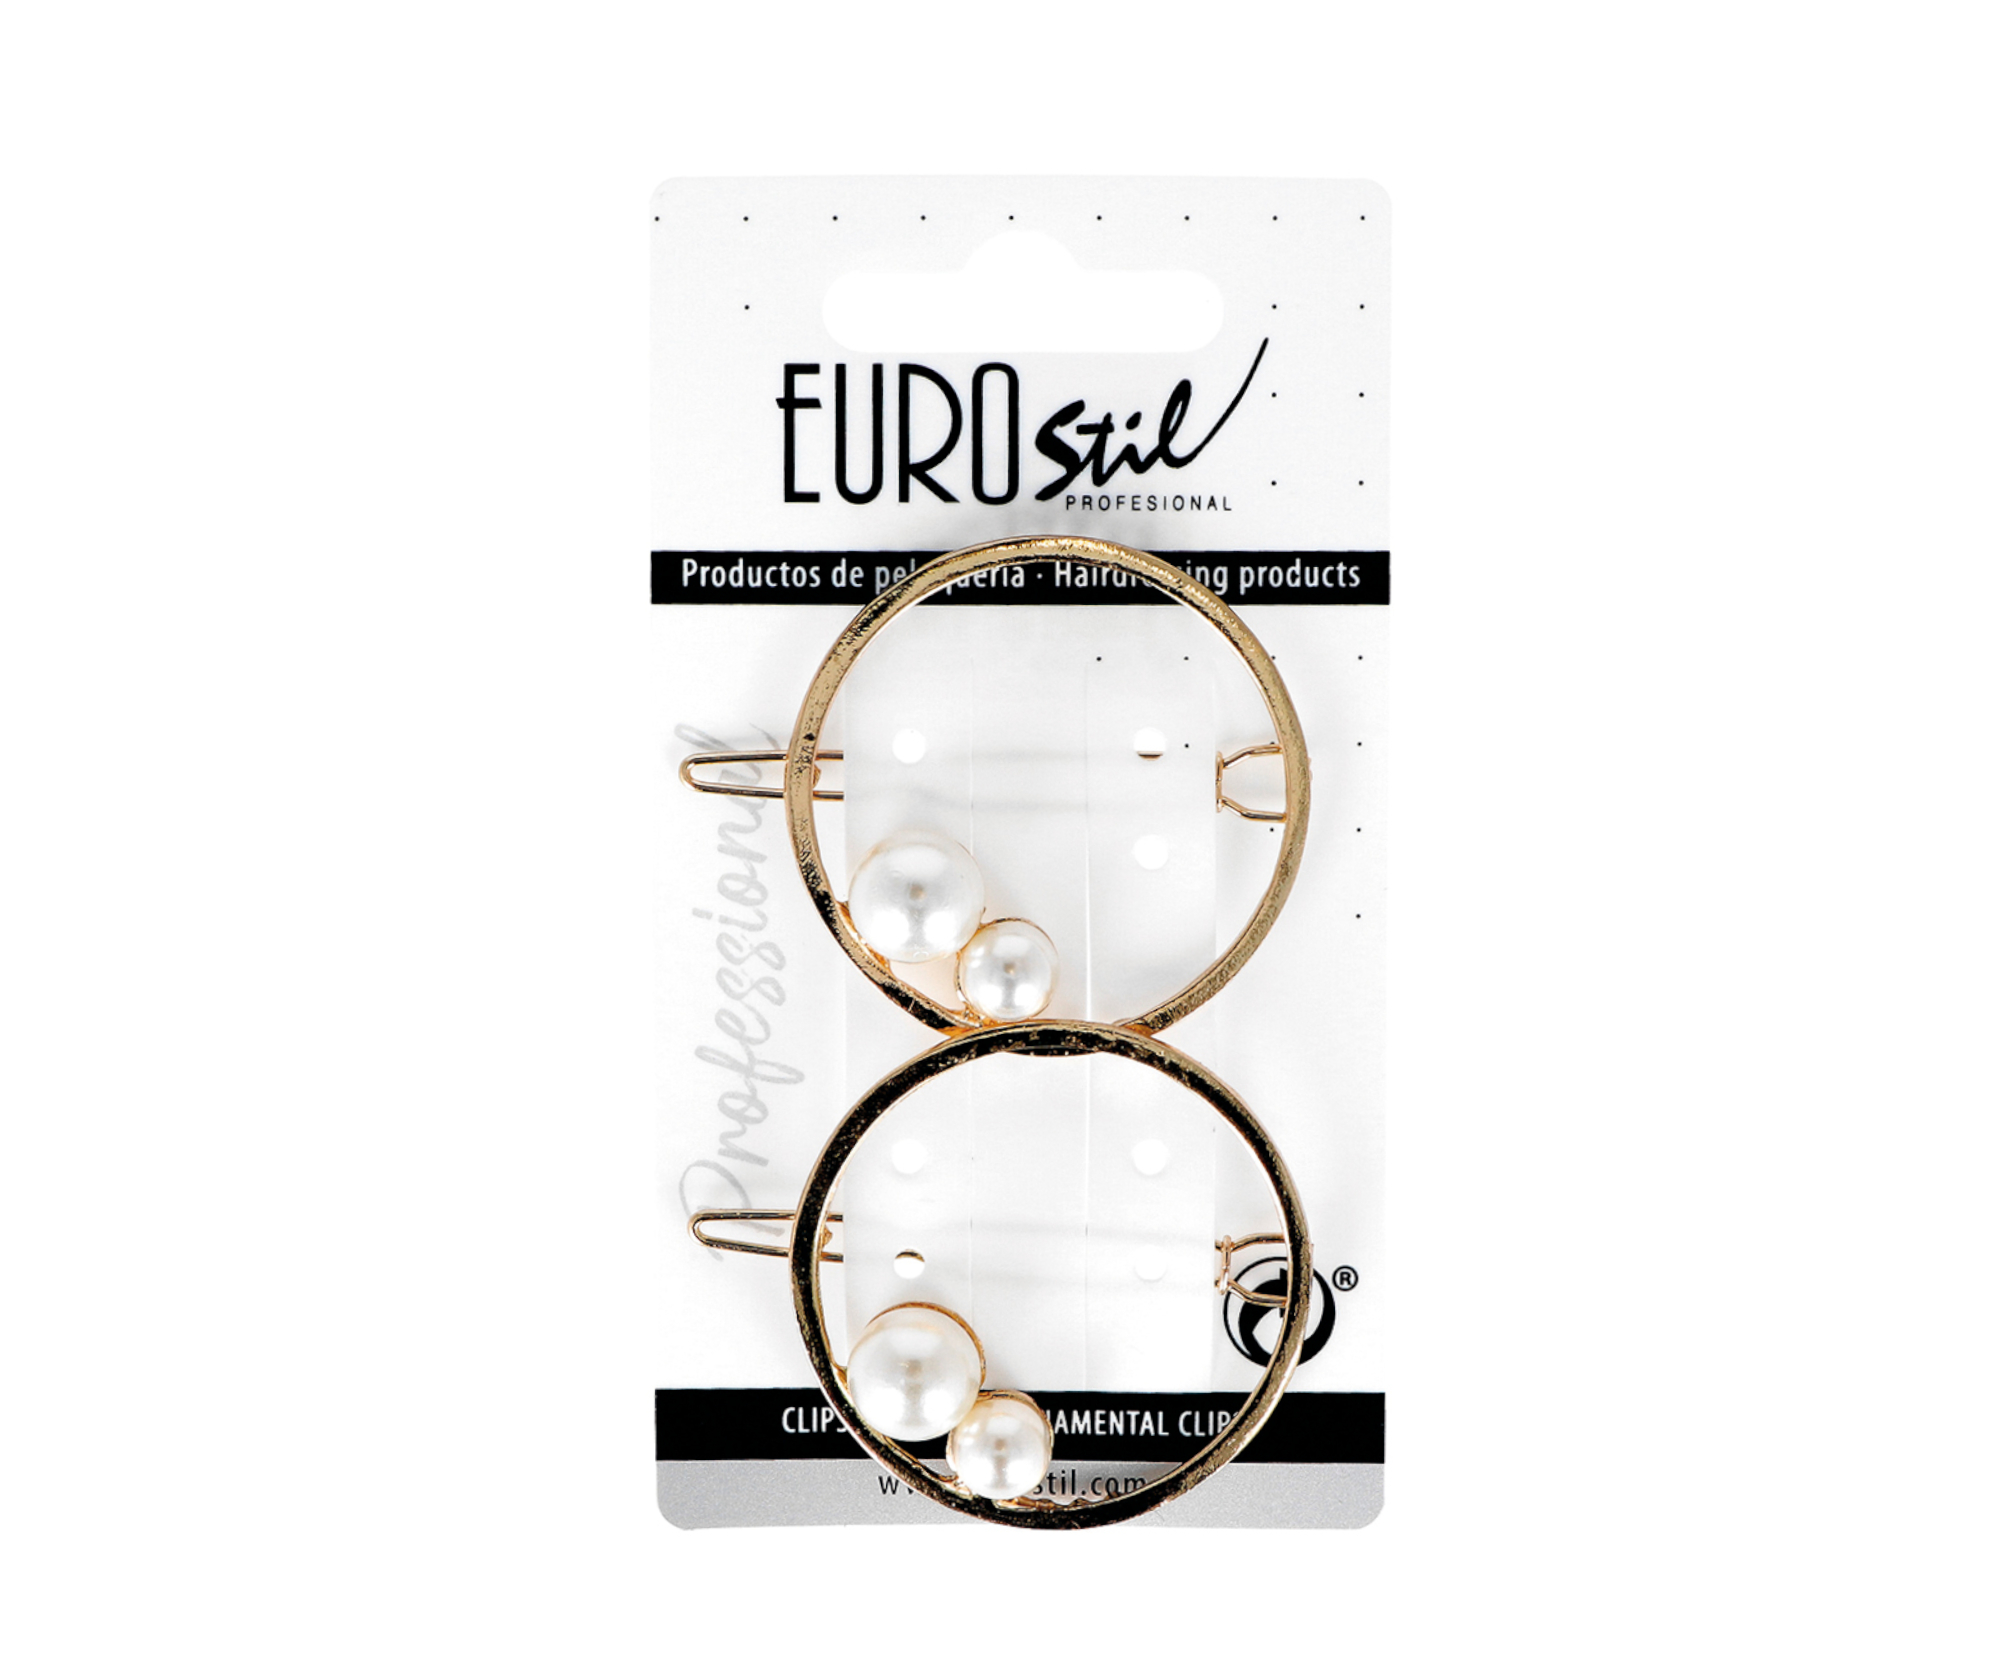 Ozdobná spona do vlasů kulatá s perlami Eurostil Profesional - 4,5 cm, zlatá, 2 ks (06941)